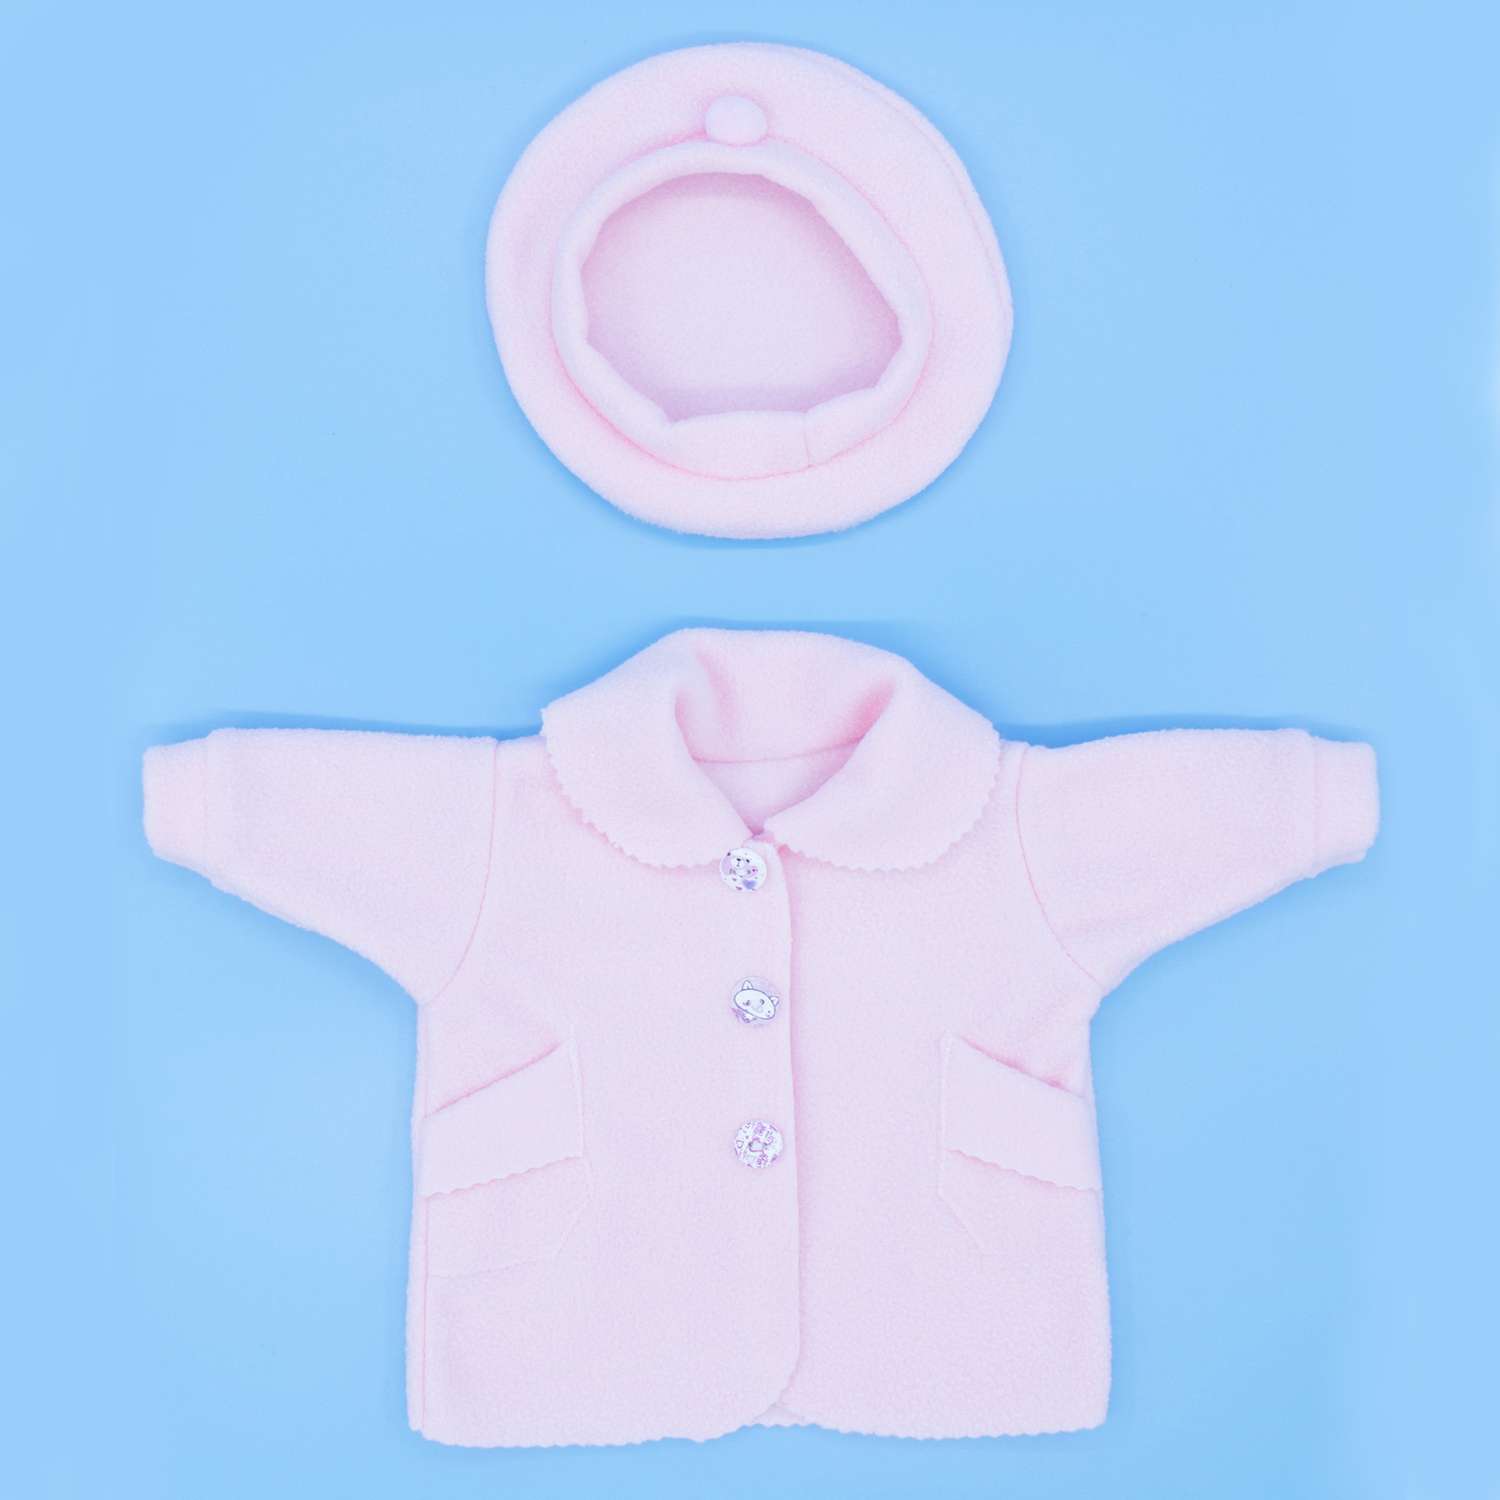 Пальто Модница для пупса 43-48 см 6119 бледно-розовый 6119бледно-розовый - фото 2